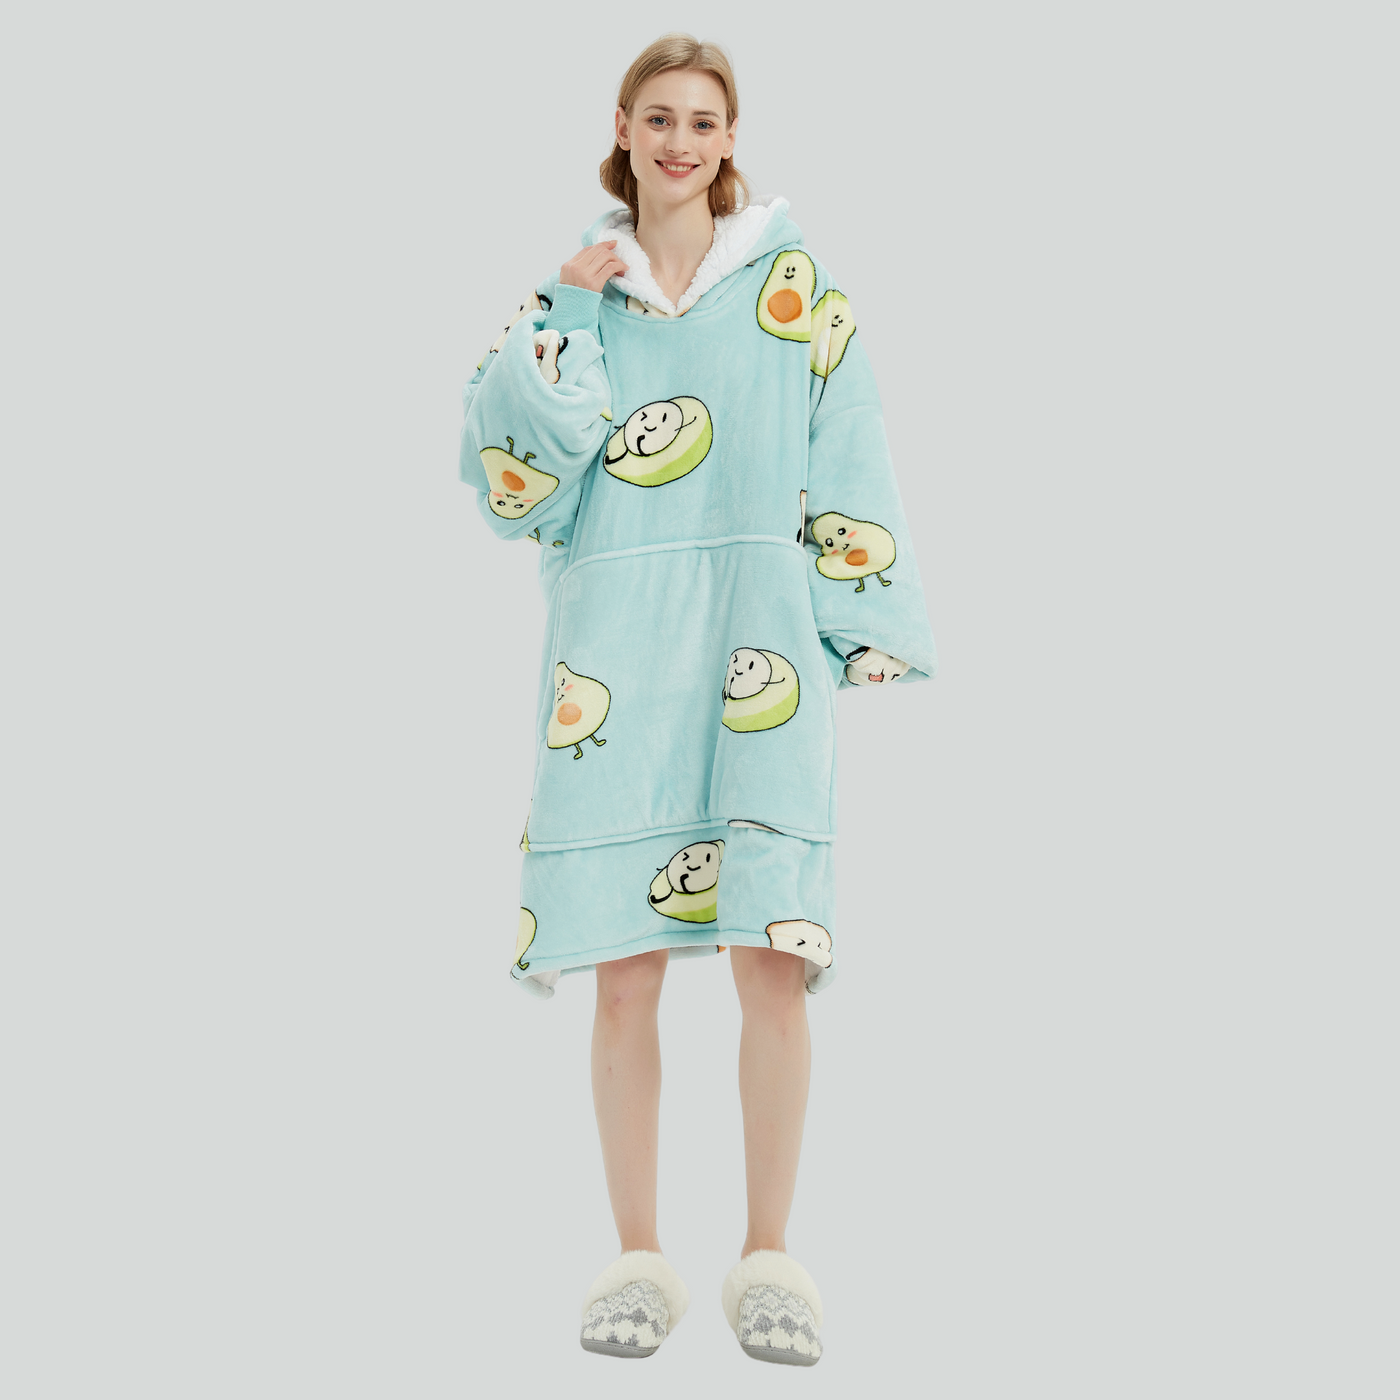 Hoodie Blanket - Avocado